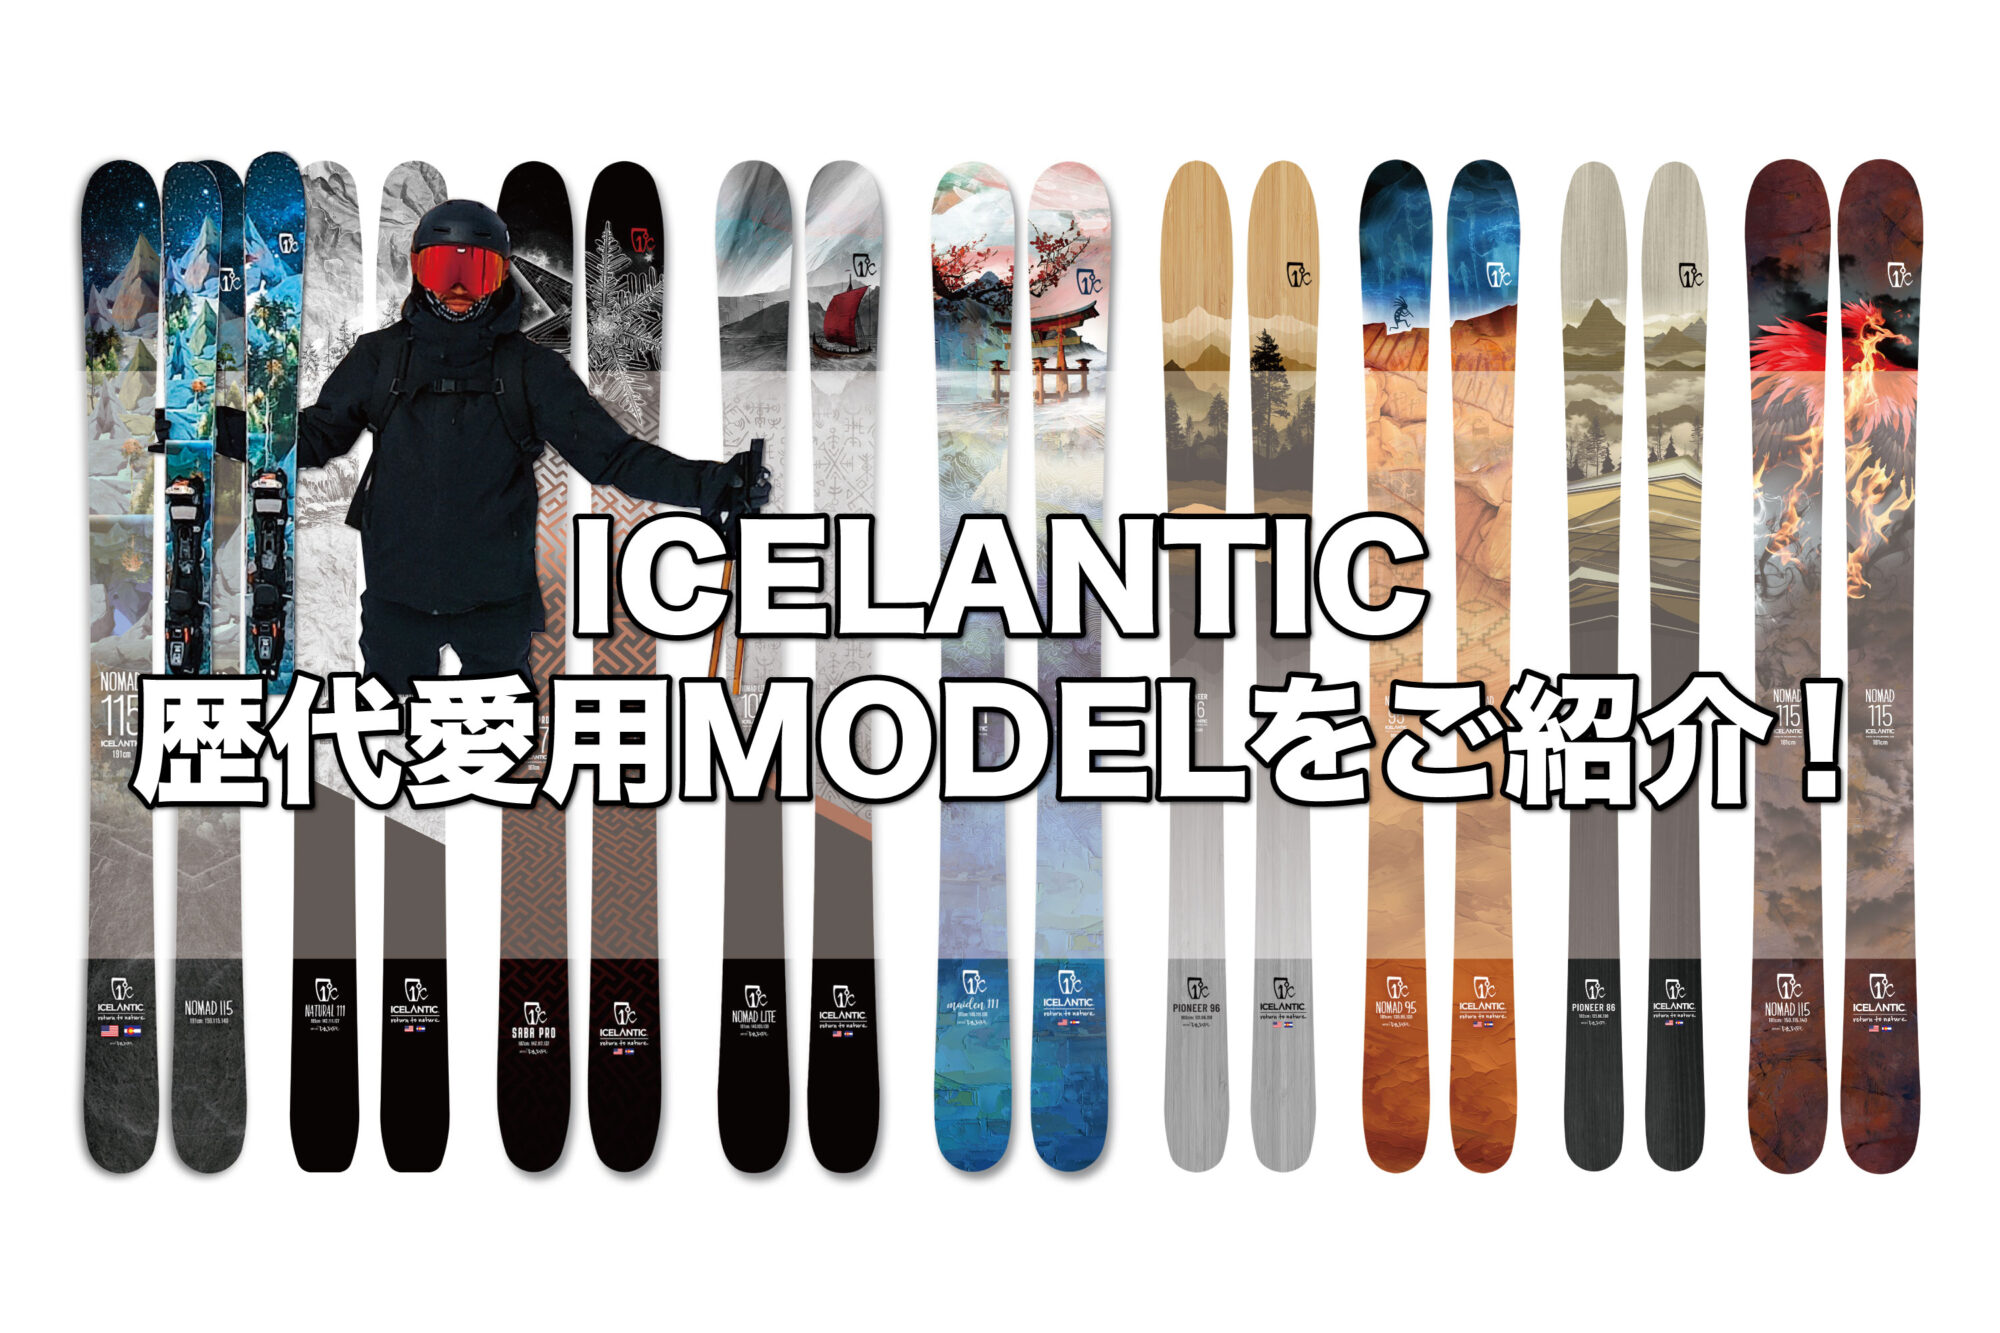 ICELANTIC SABRE 80 174 アイスランティック - スキー